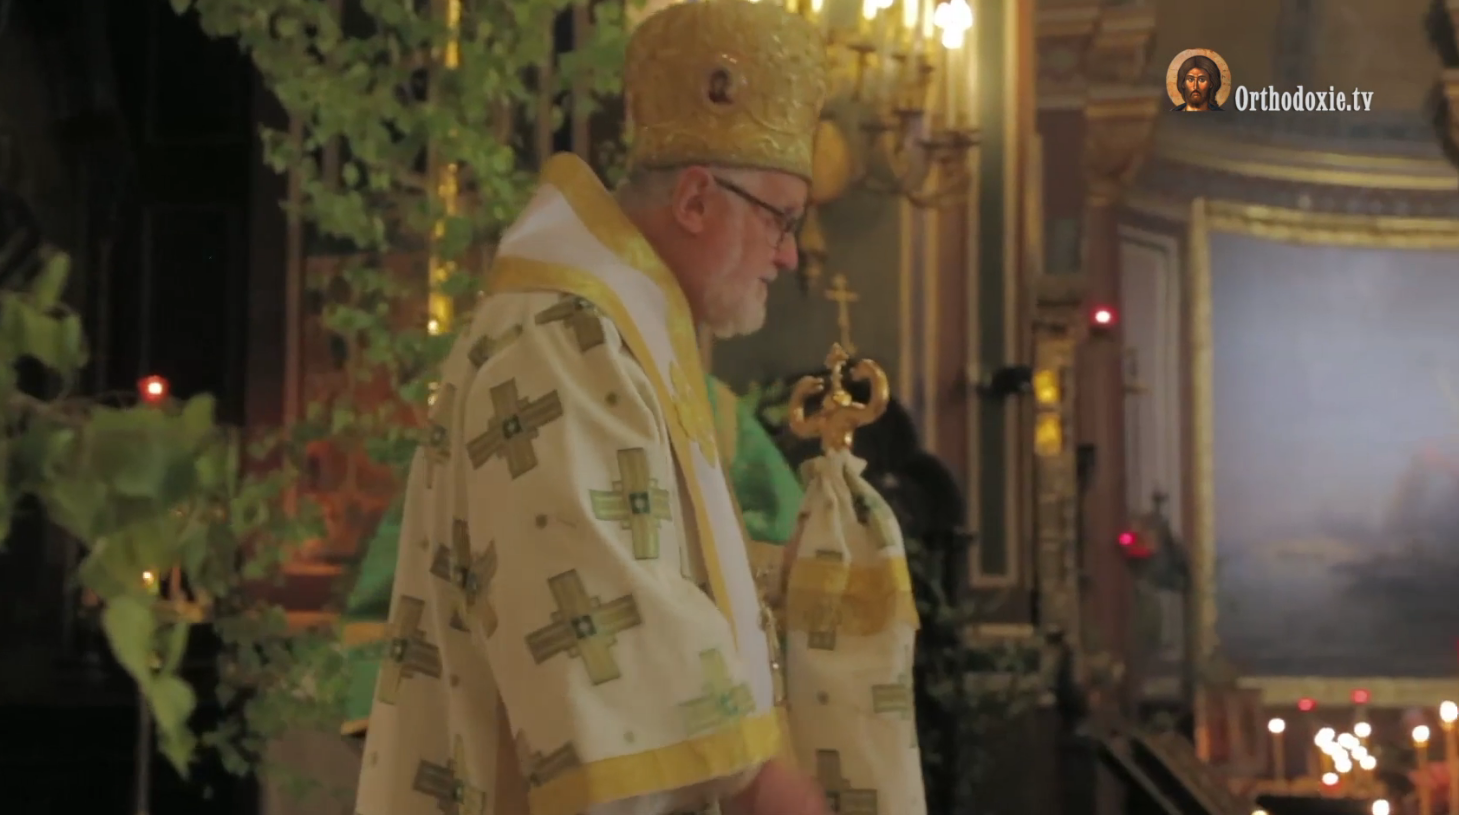 Homélie du lundi de pentecôte par mgr jean à la cathédrale saint-alexandre-nevsky à paris – 17 juin 2019